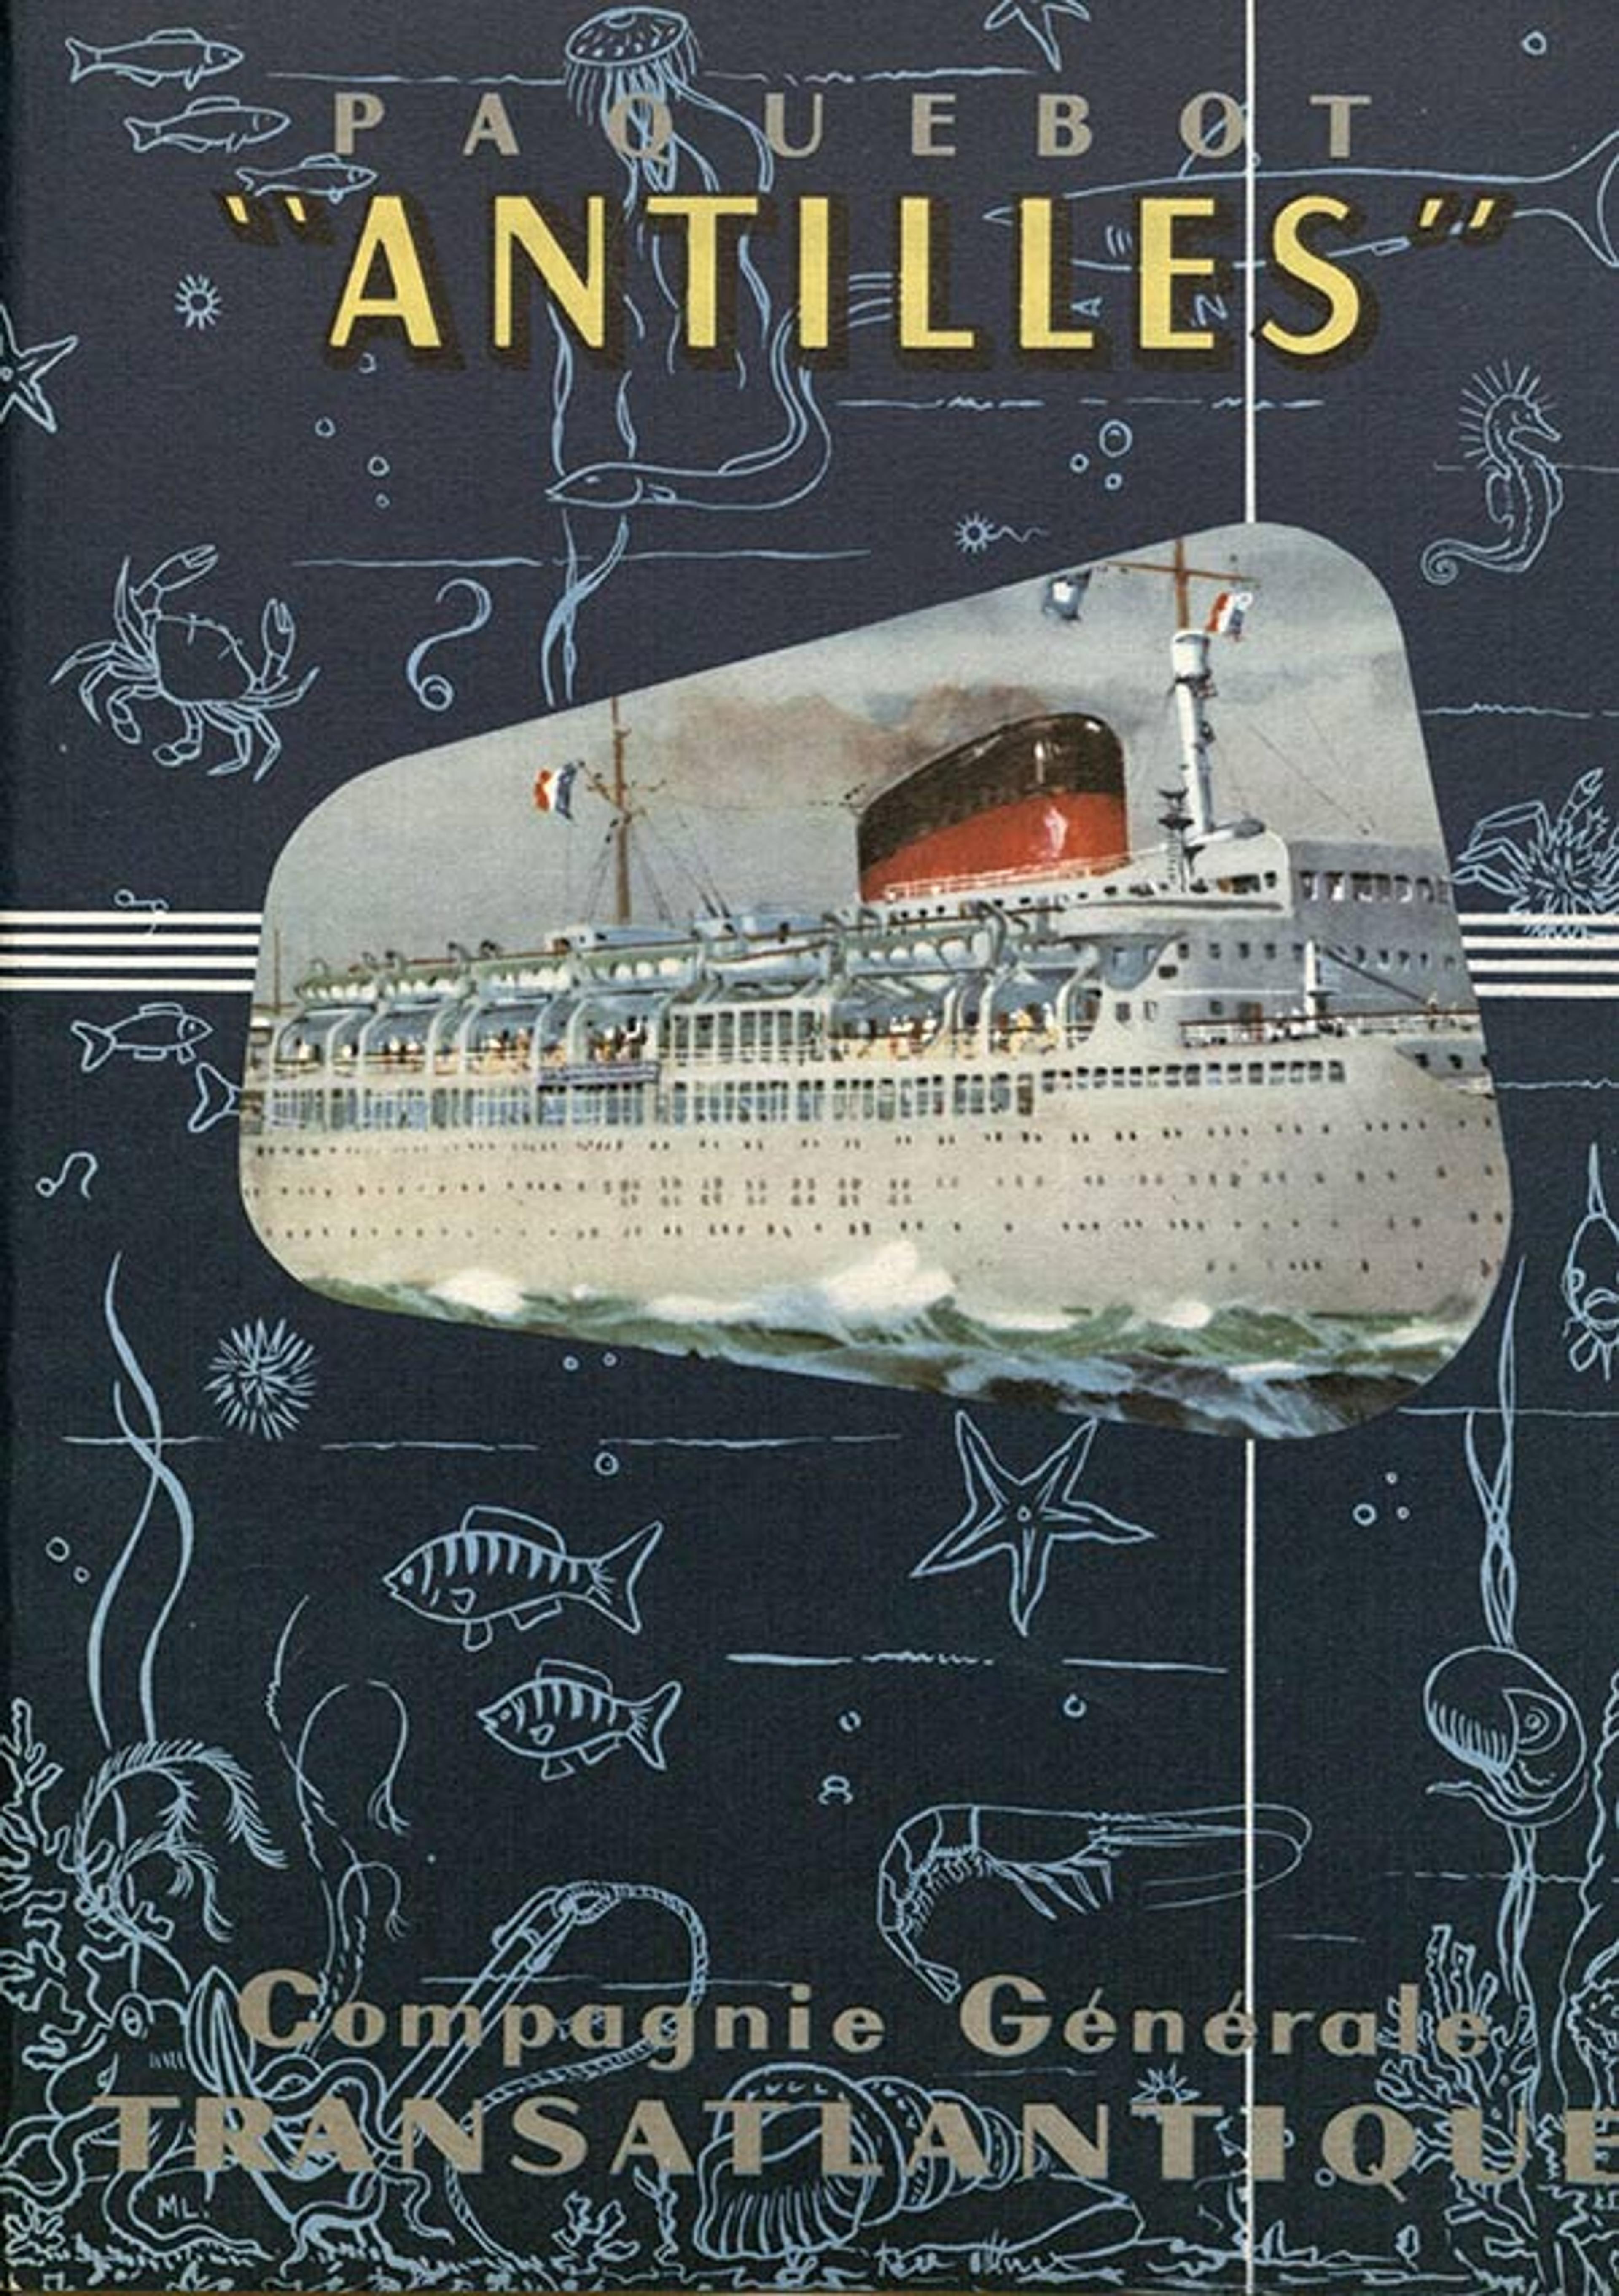 Antilles cruise ship (1961)